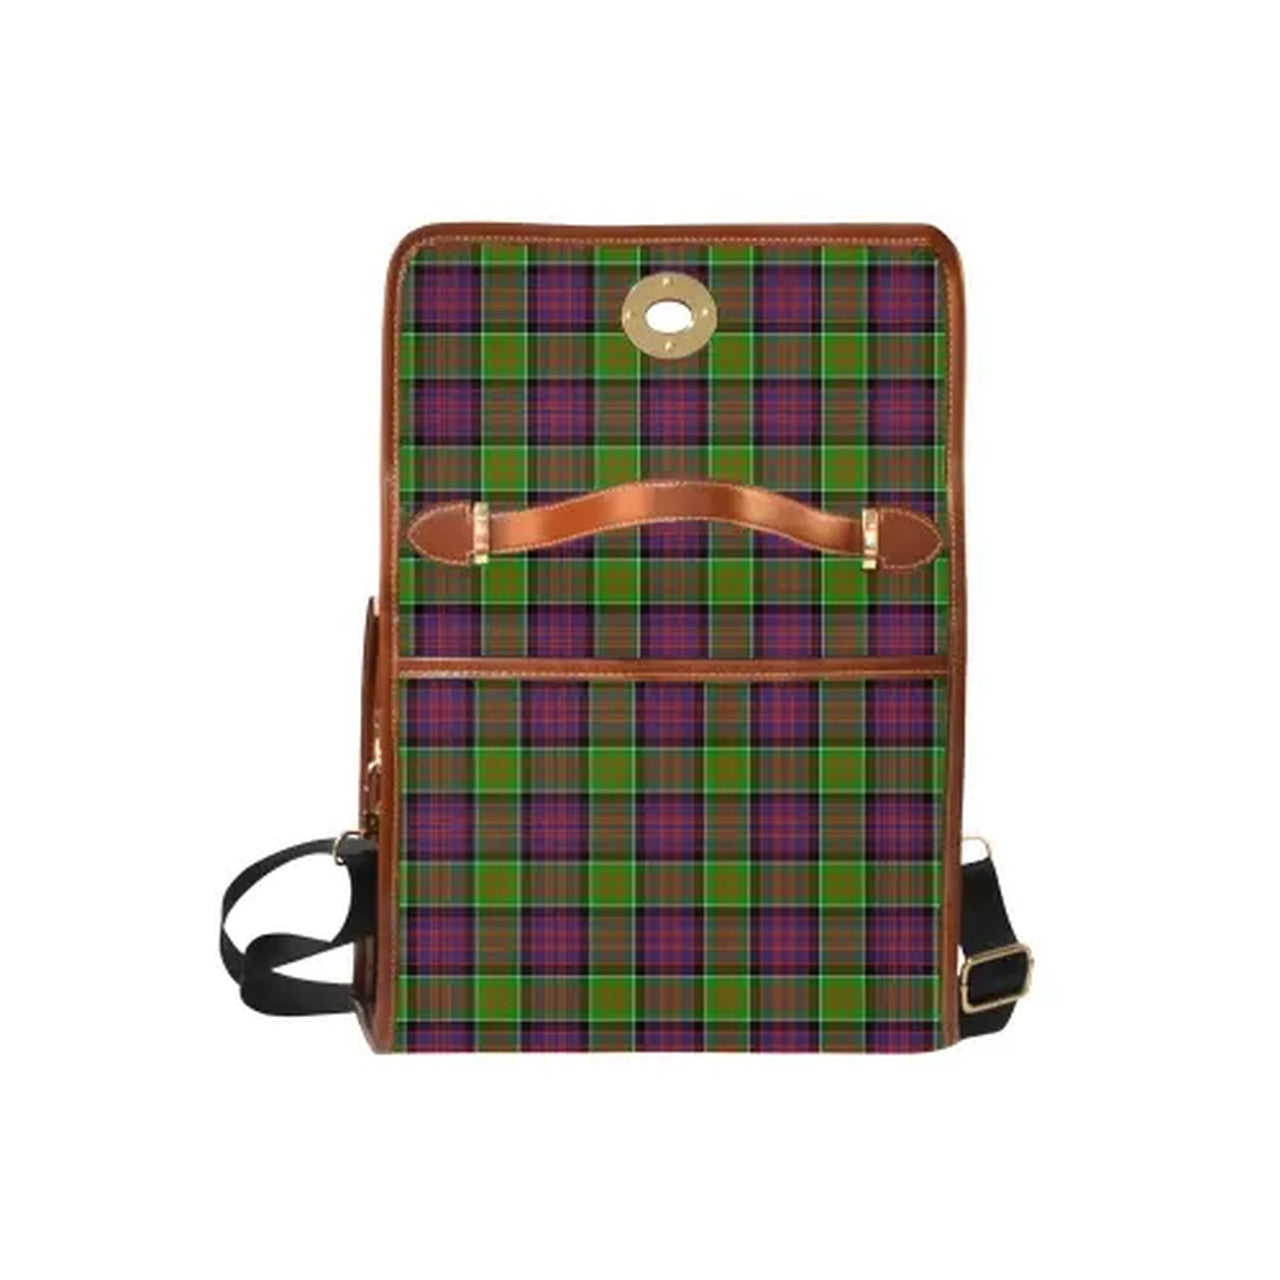 MacDonald (Clan Ranald) Tartan Canvas Bag